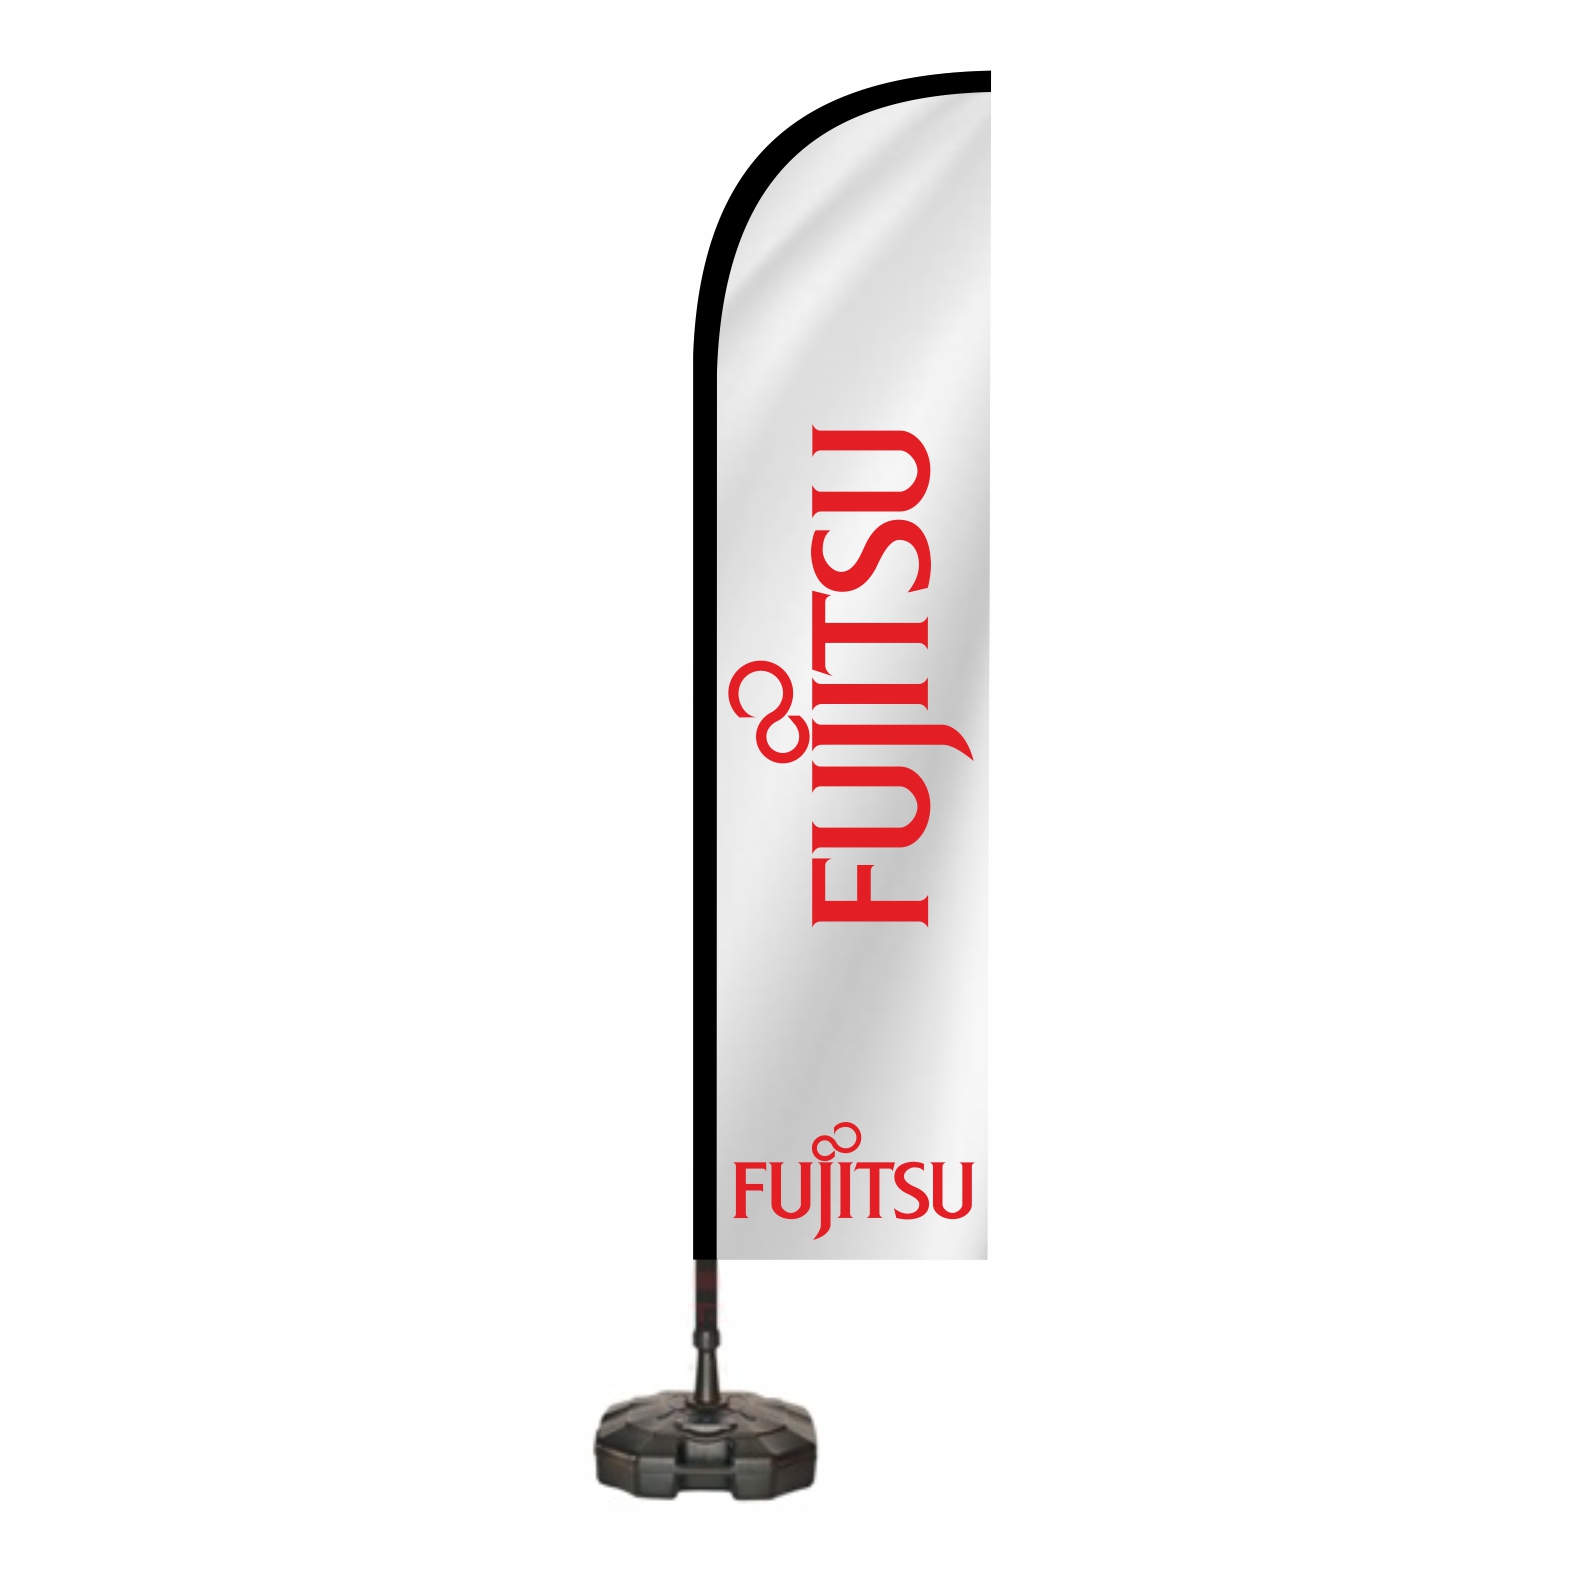 Fujitsu Yelken Bayra